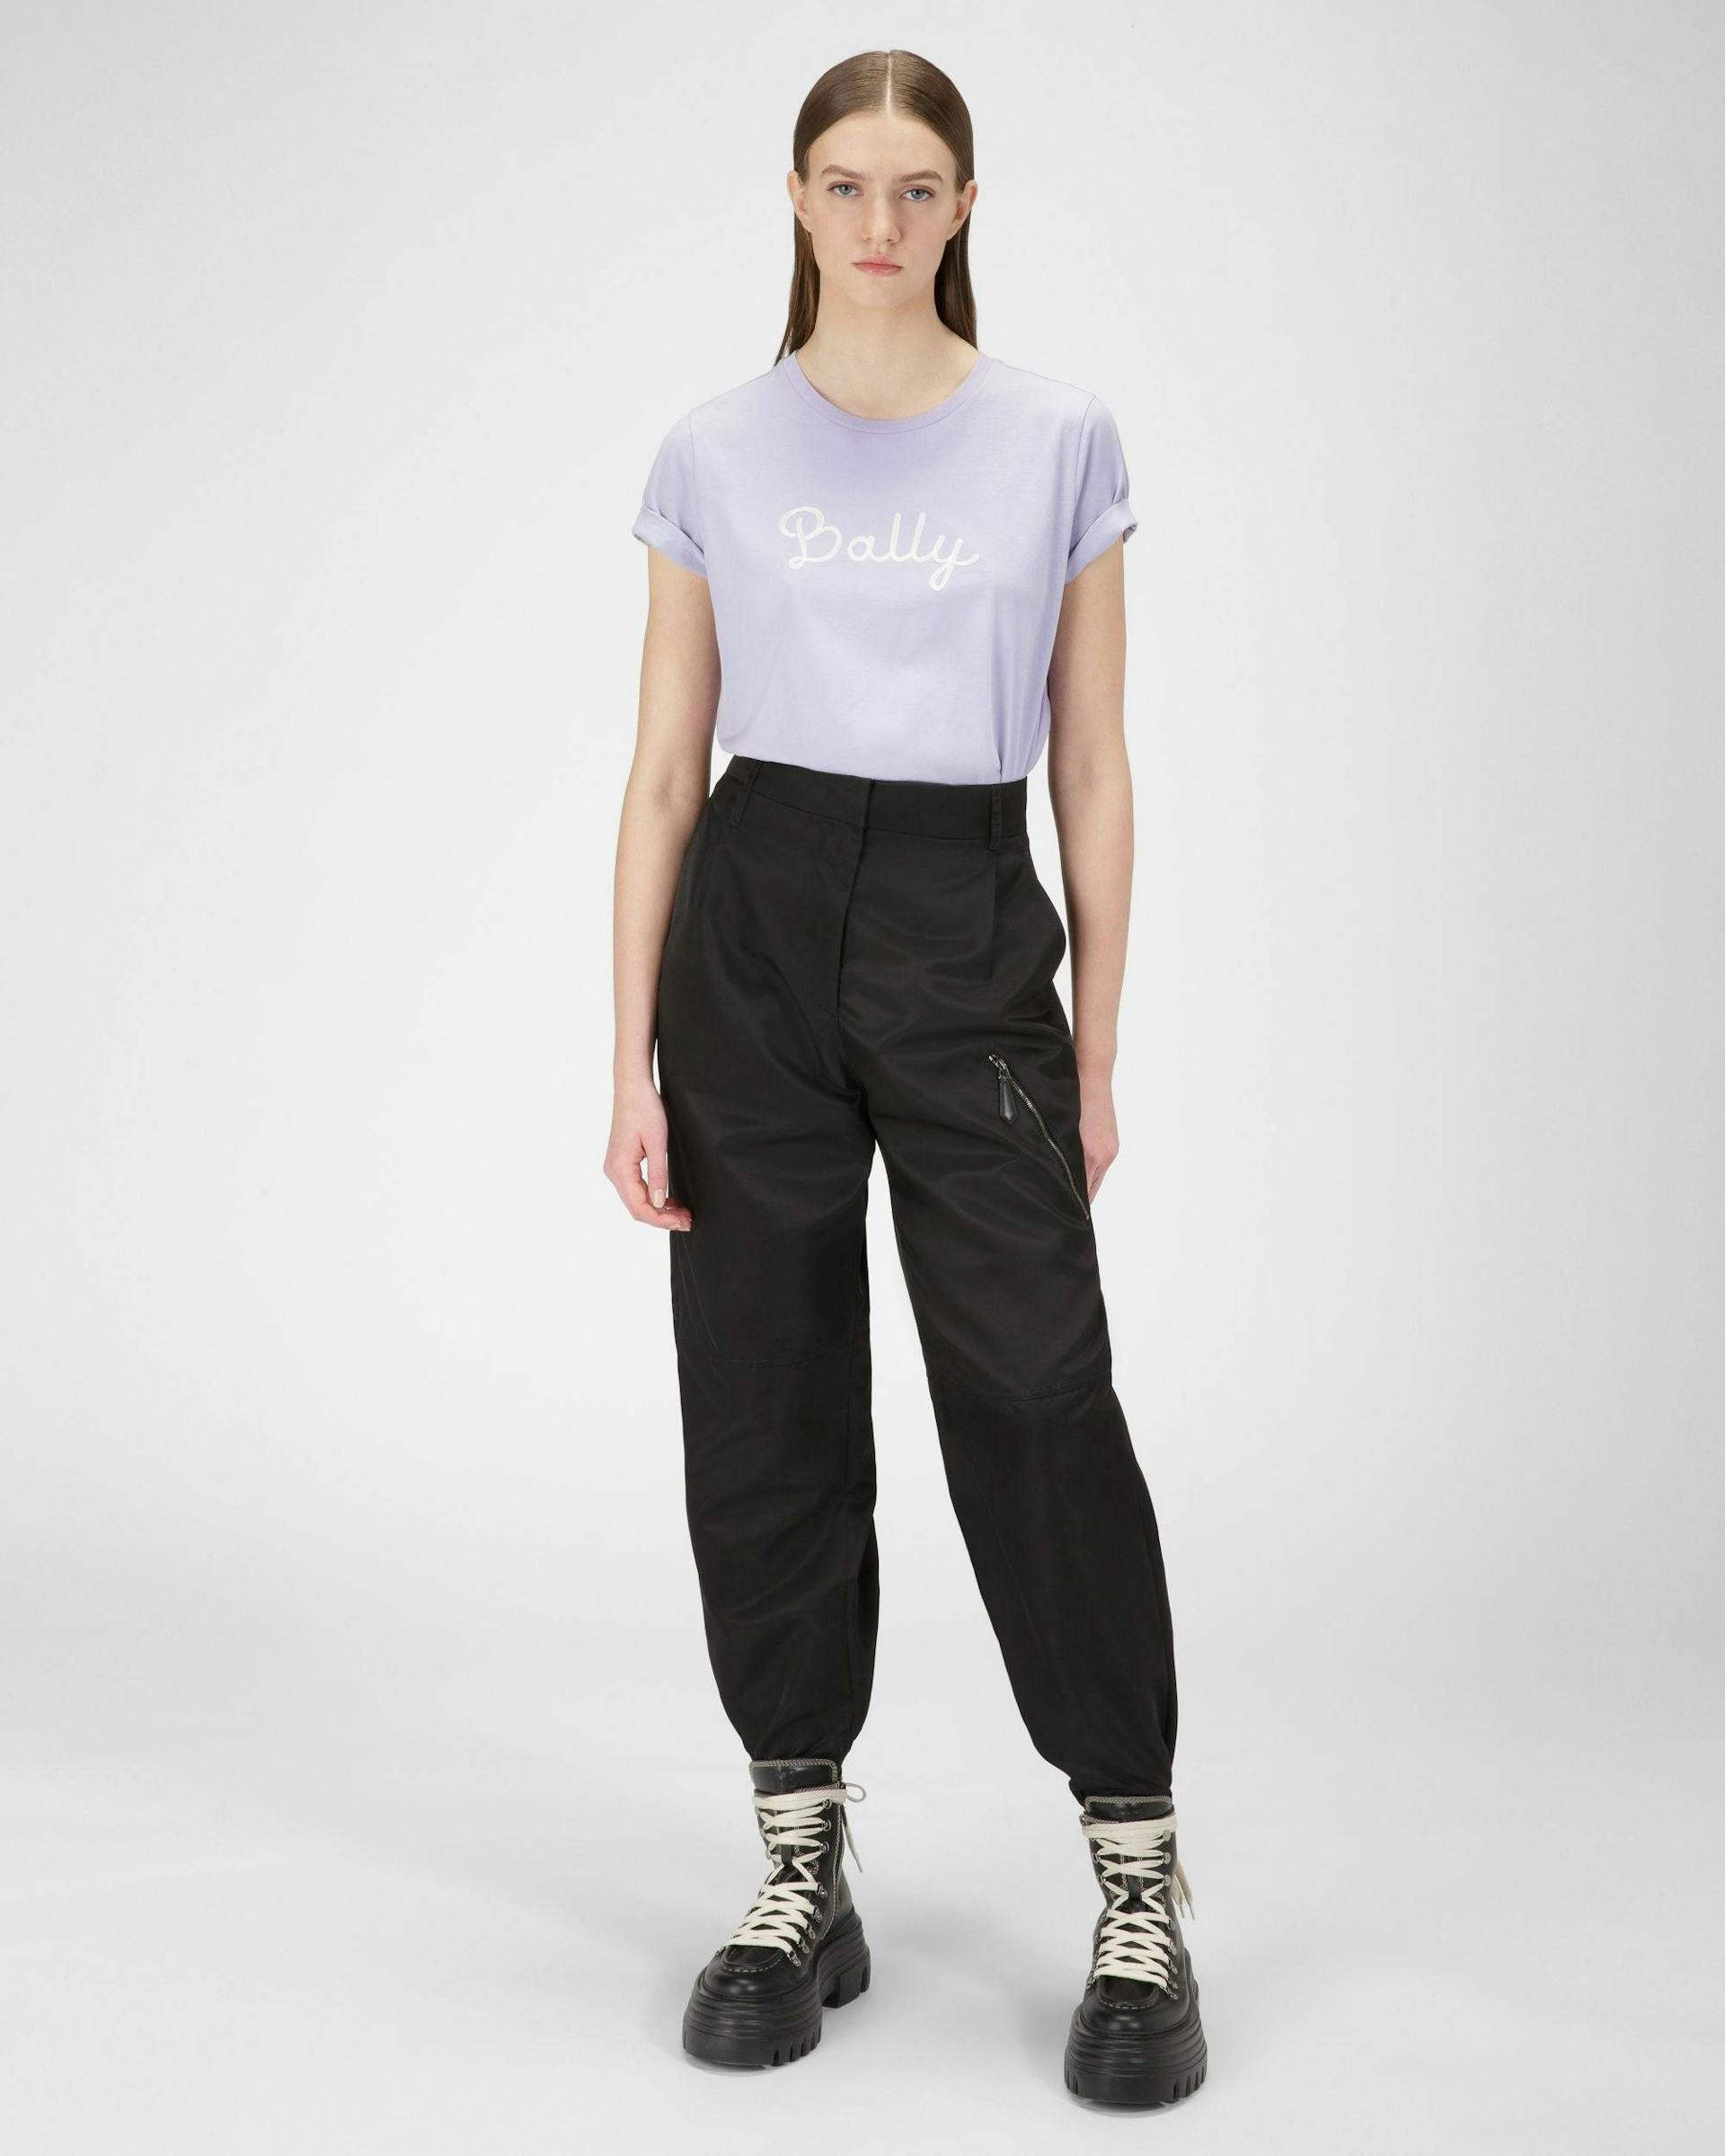 Organic Cotton T-Shirt In Lilac - Women's - Bally - 05